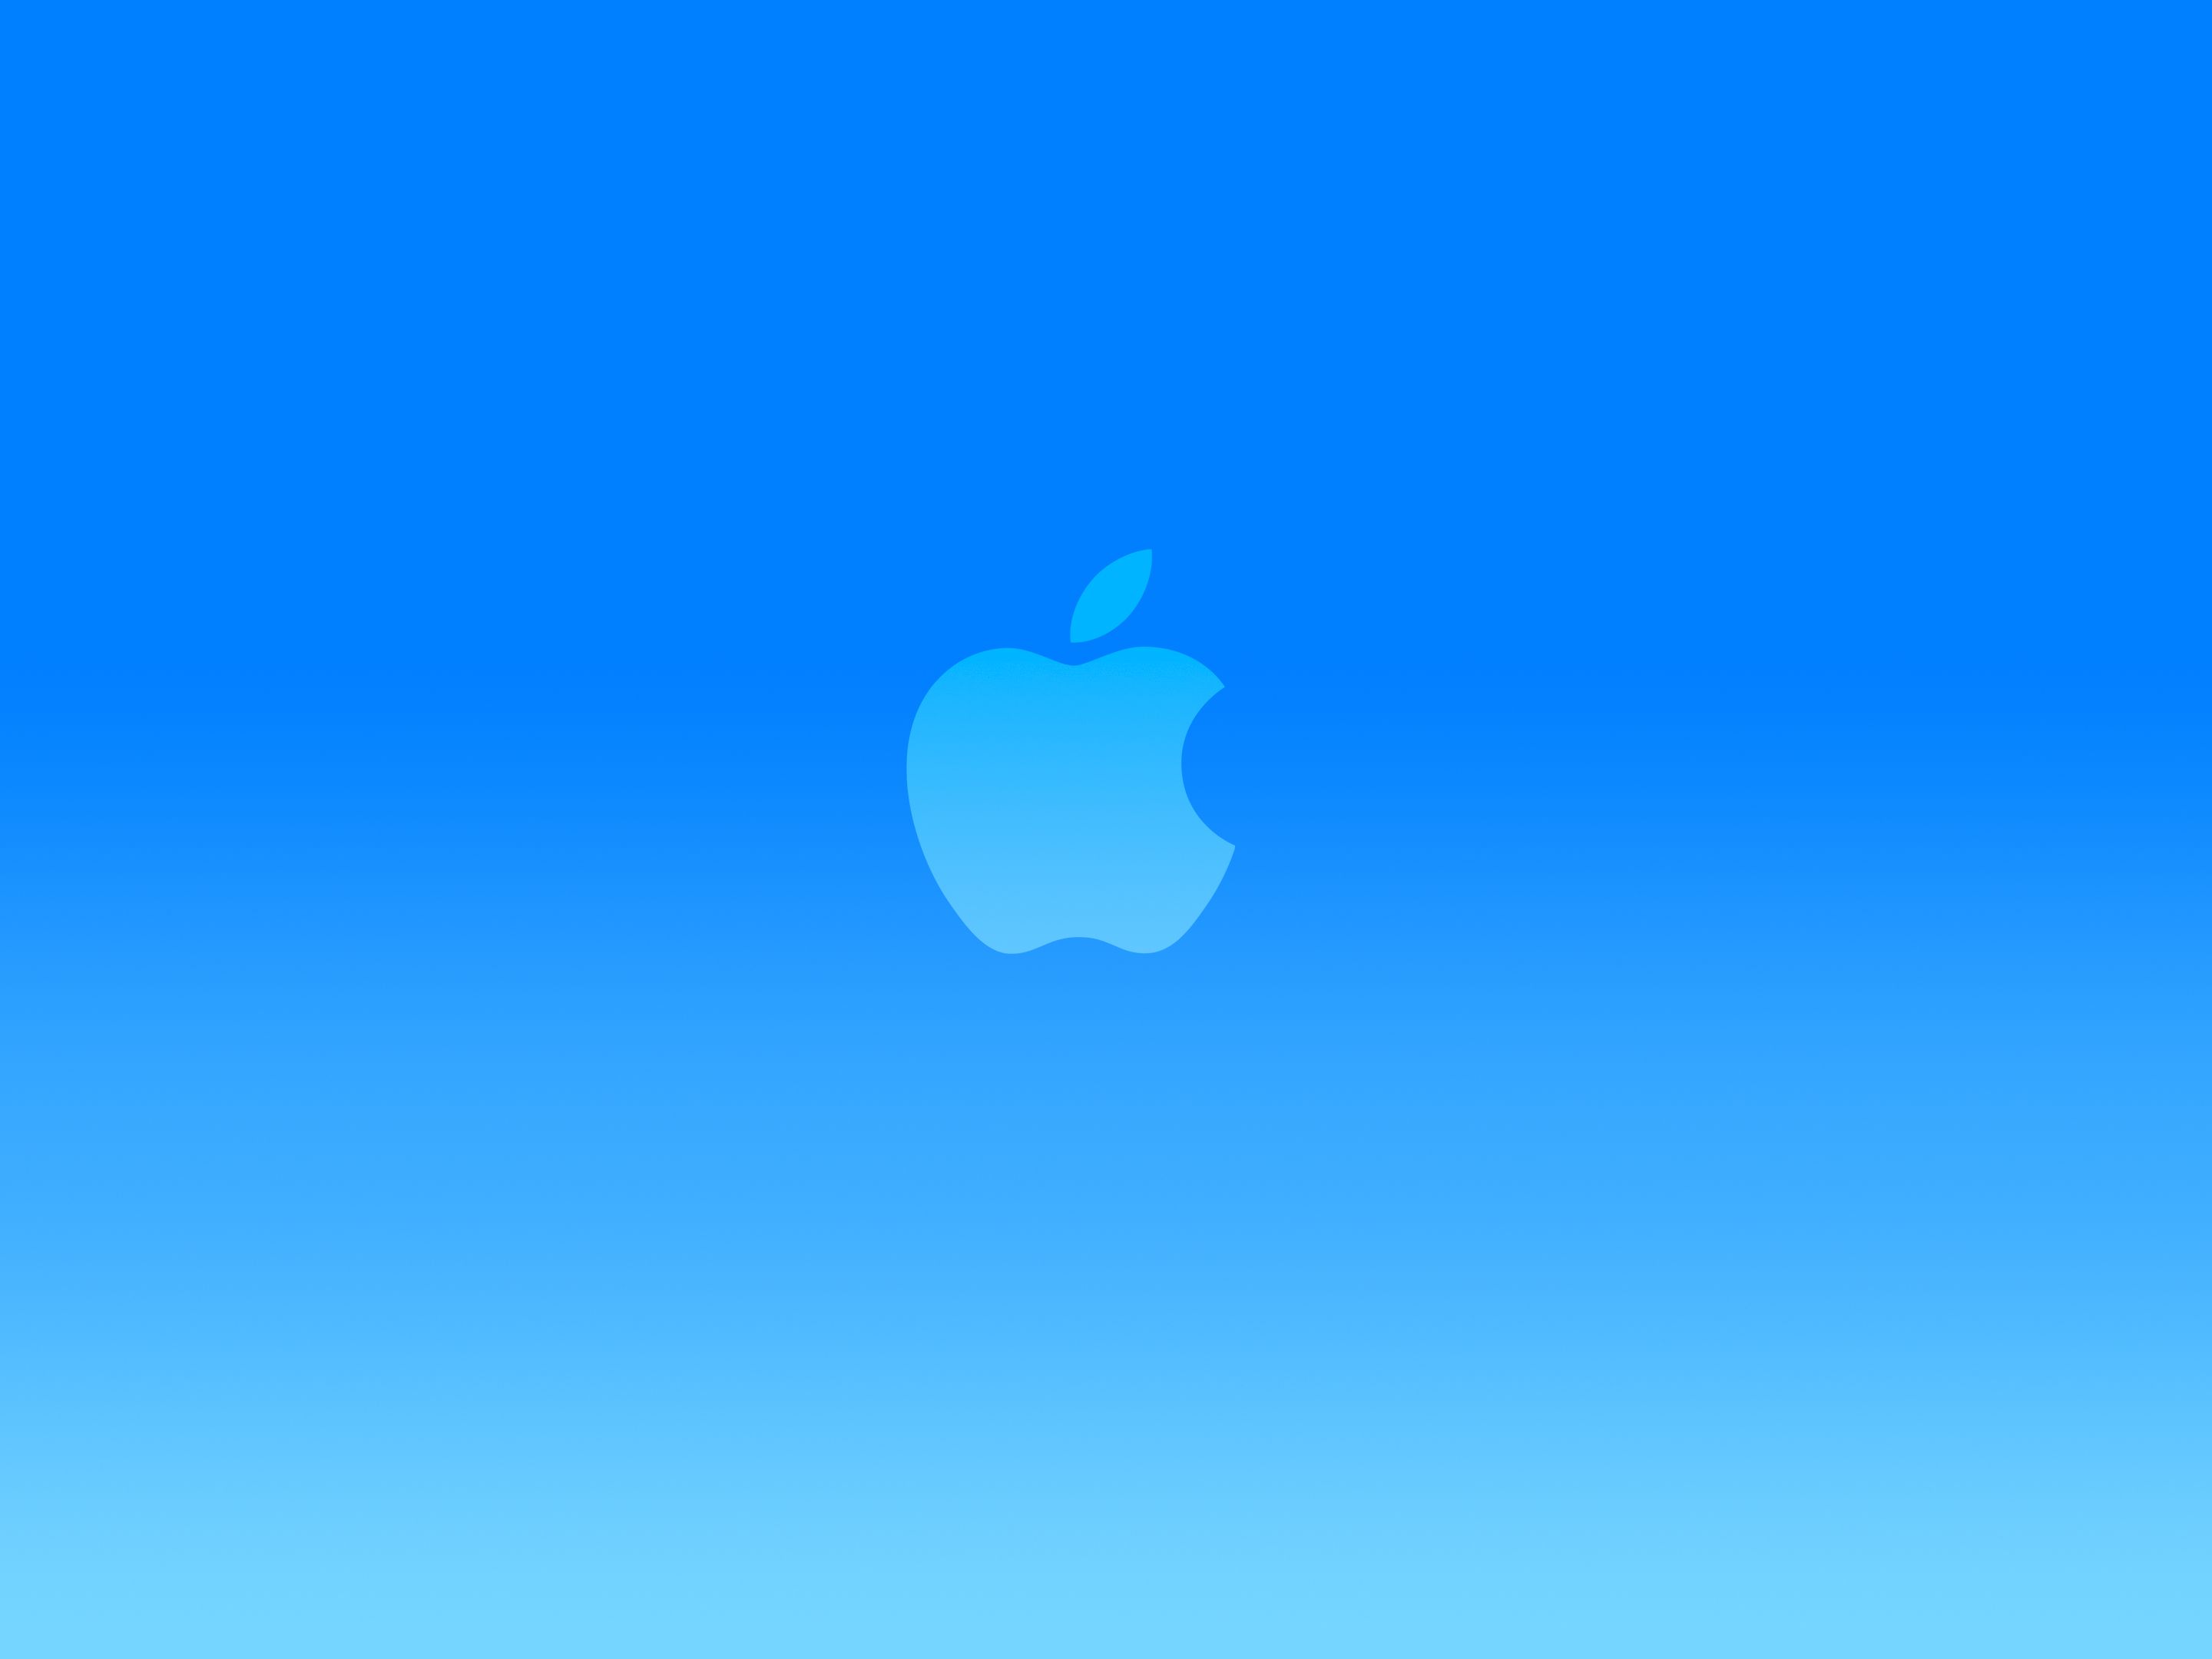 bright-blue-apple-logo-wallpaper.jpg